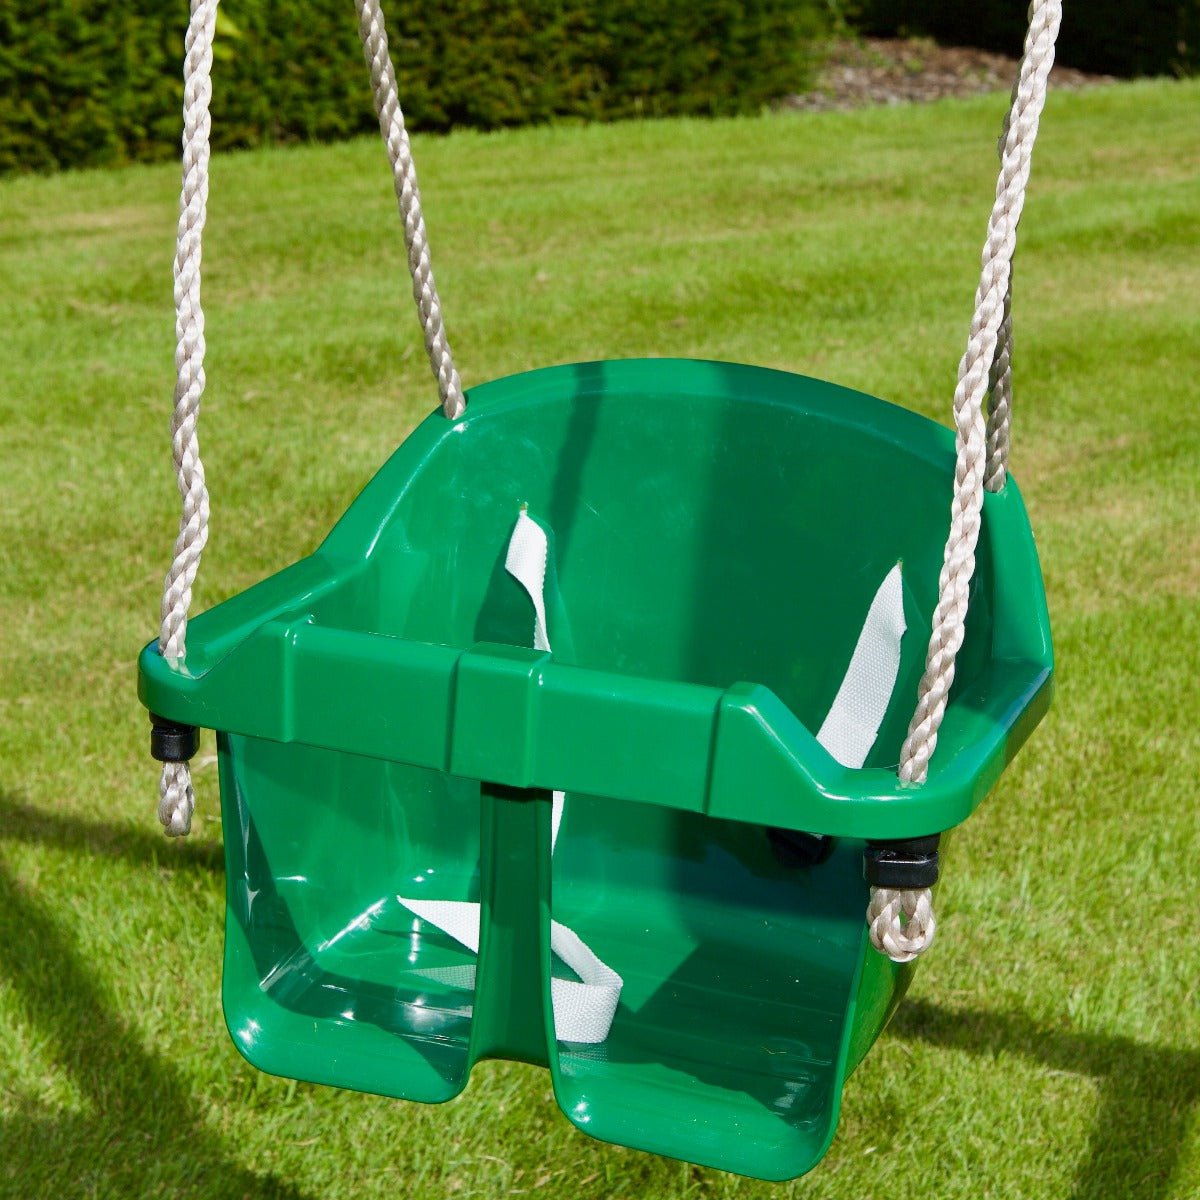 Rebo Toddler Swing Seat - Green